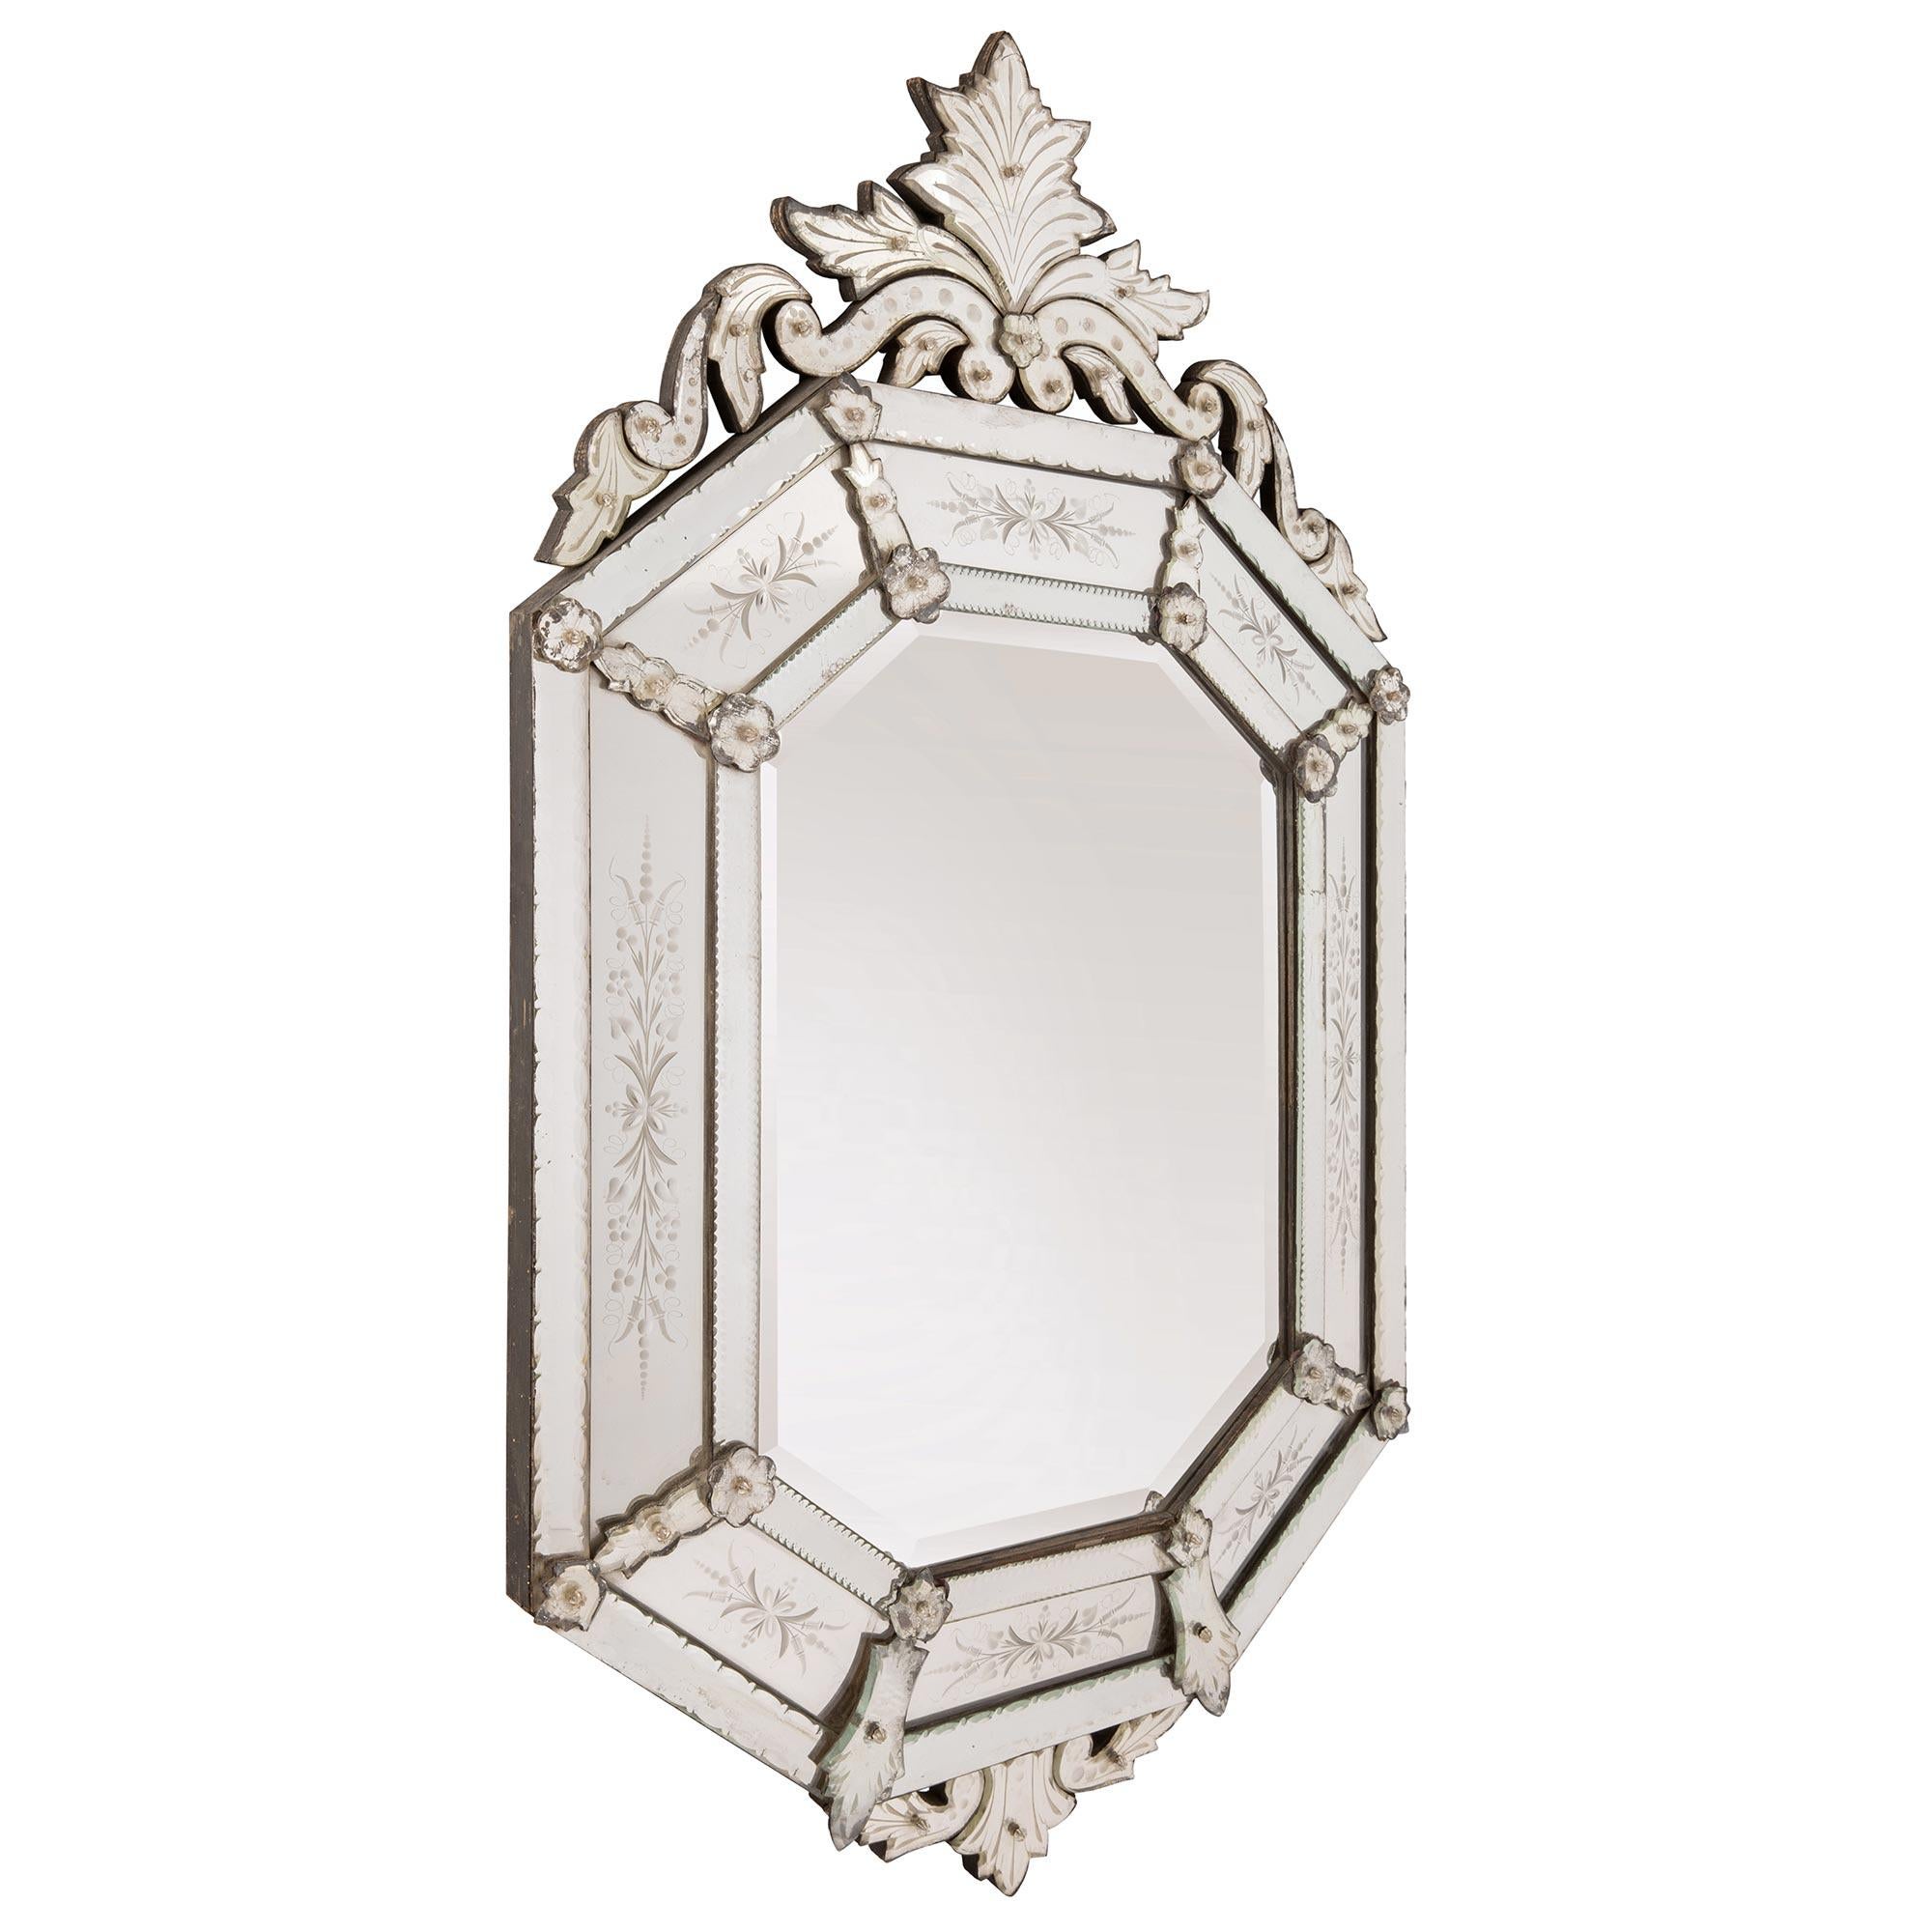 Magnifique miroir italien du début du siècle, à double cadre, de style vénitien. Le miroir de forme octogonale conserve toutes ses plaques de miroir d'origine, la plaque centrale affichant un bord biseauté très décoratif et encadré par des plaques